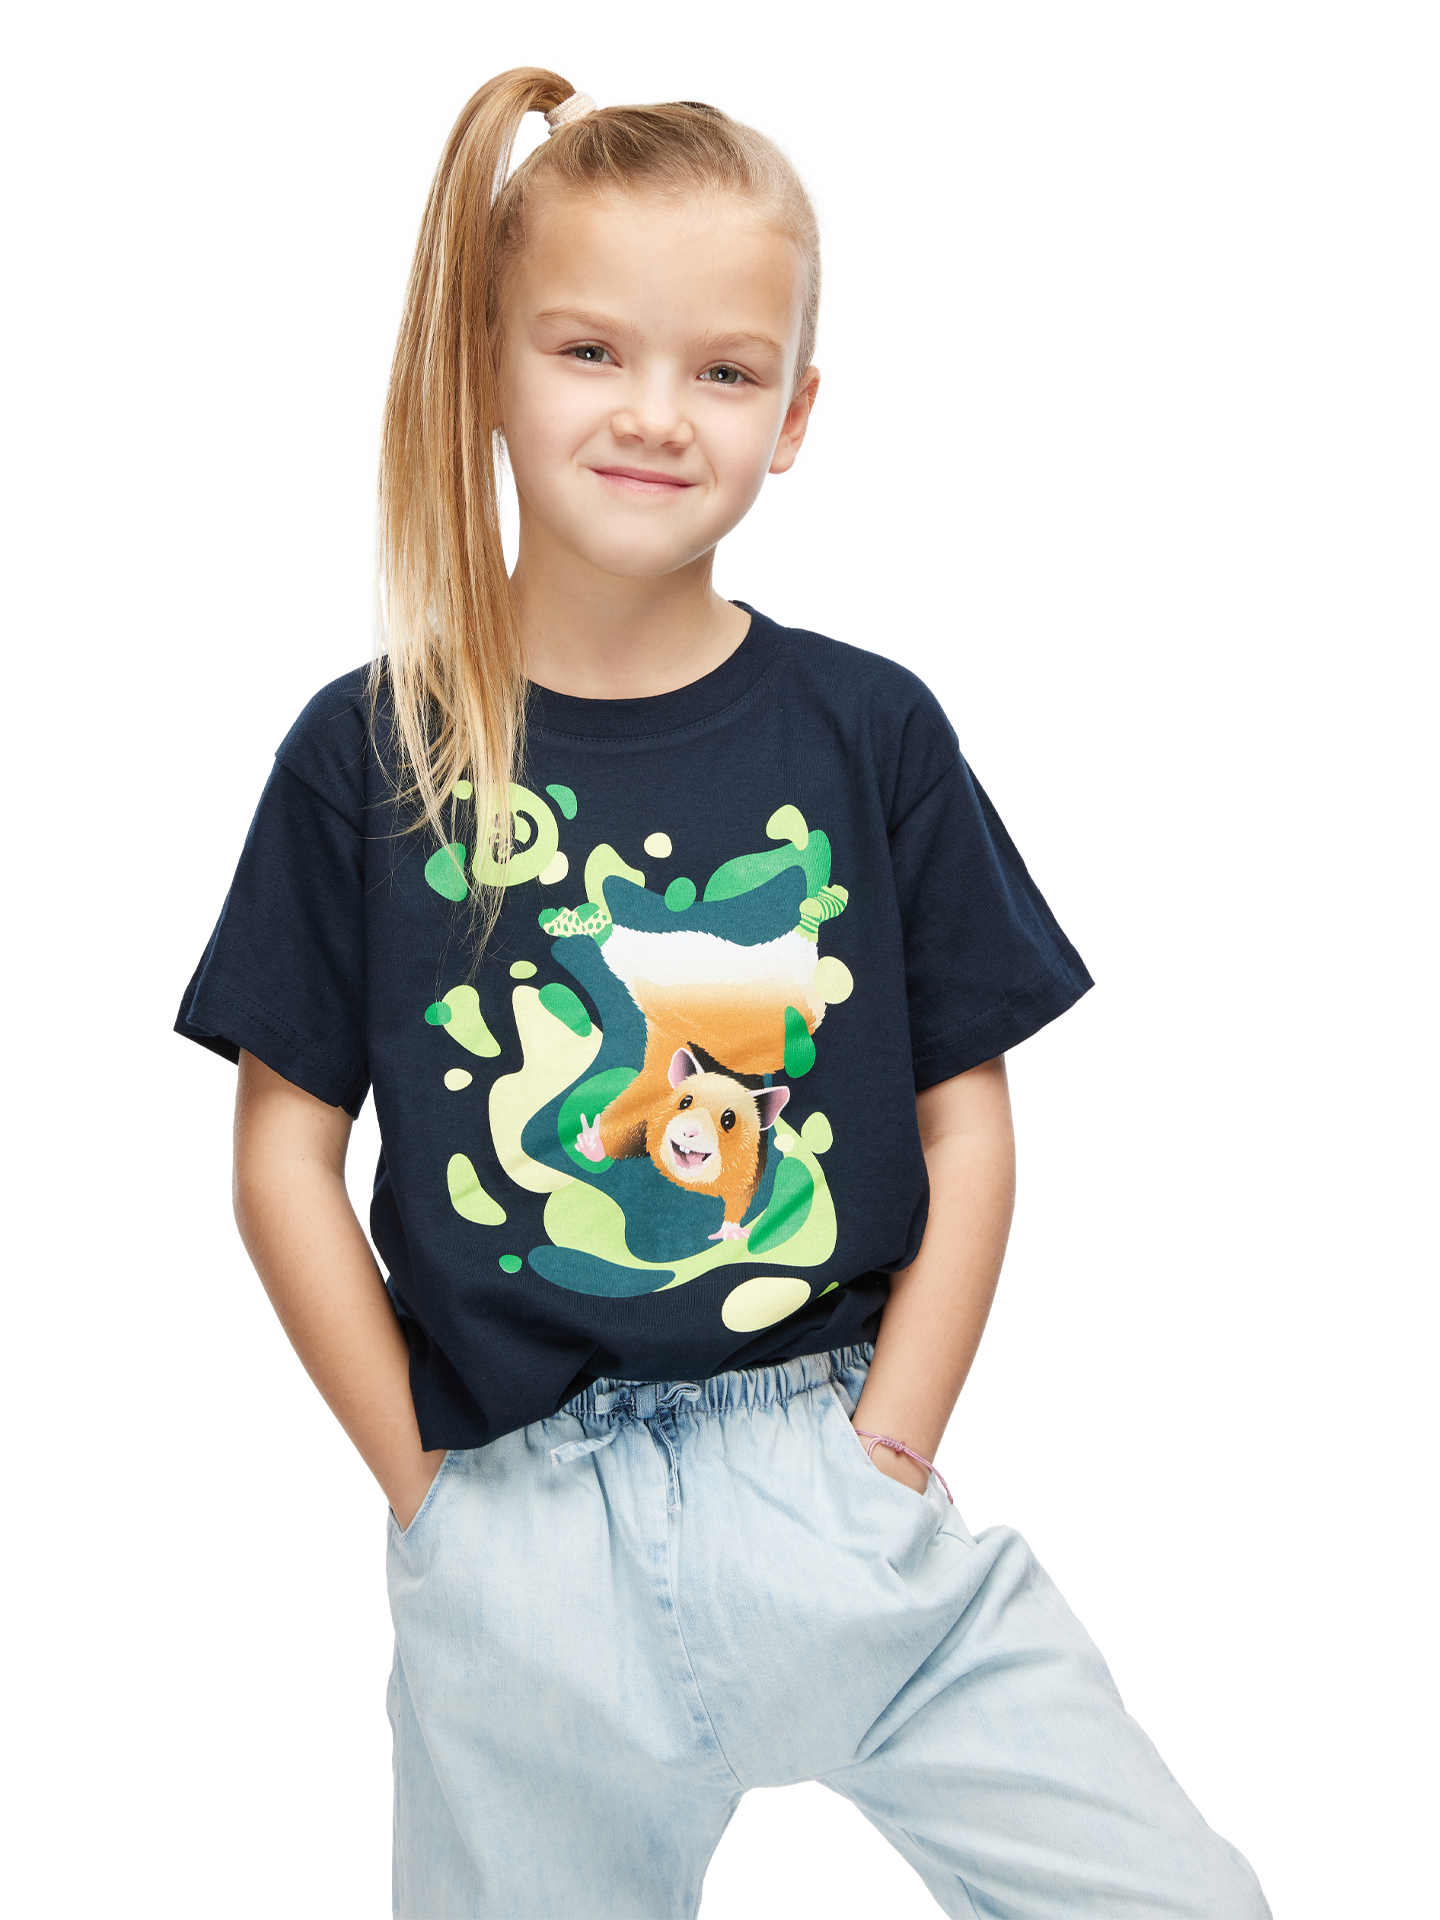 Kids' T-Shirt Breakdance Hamster